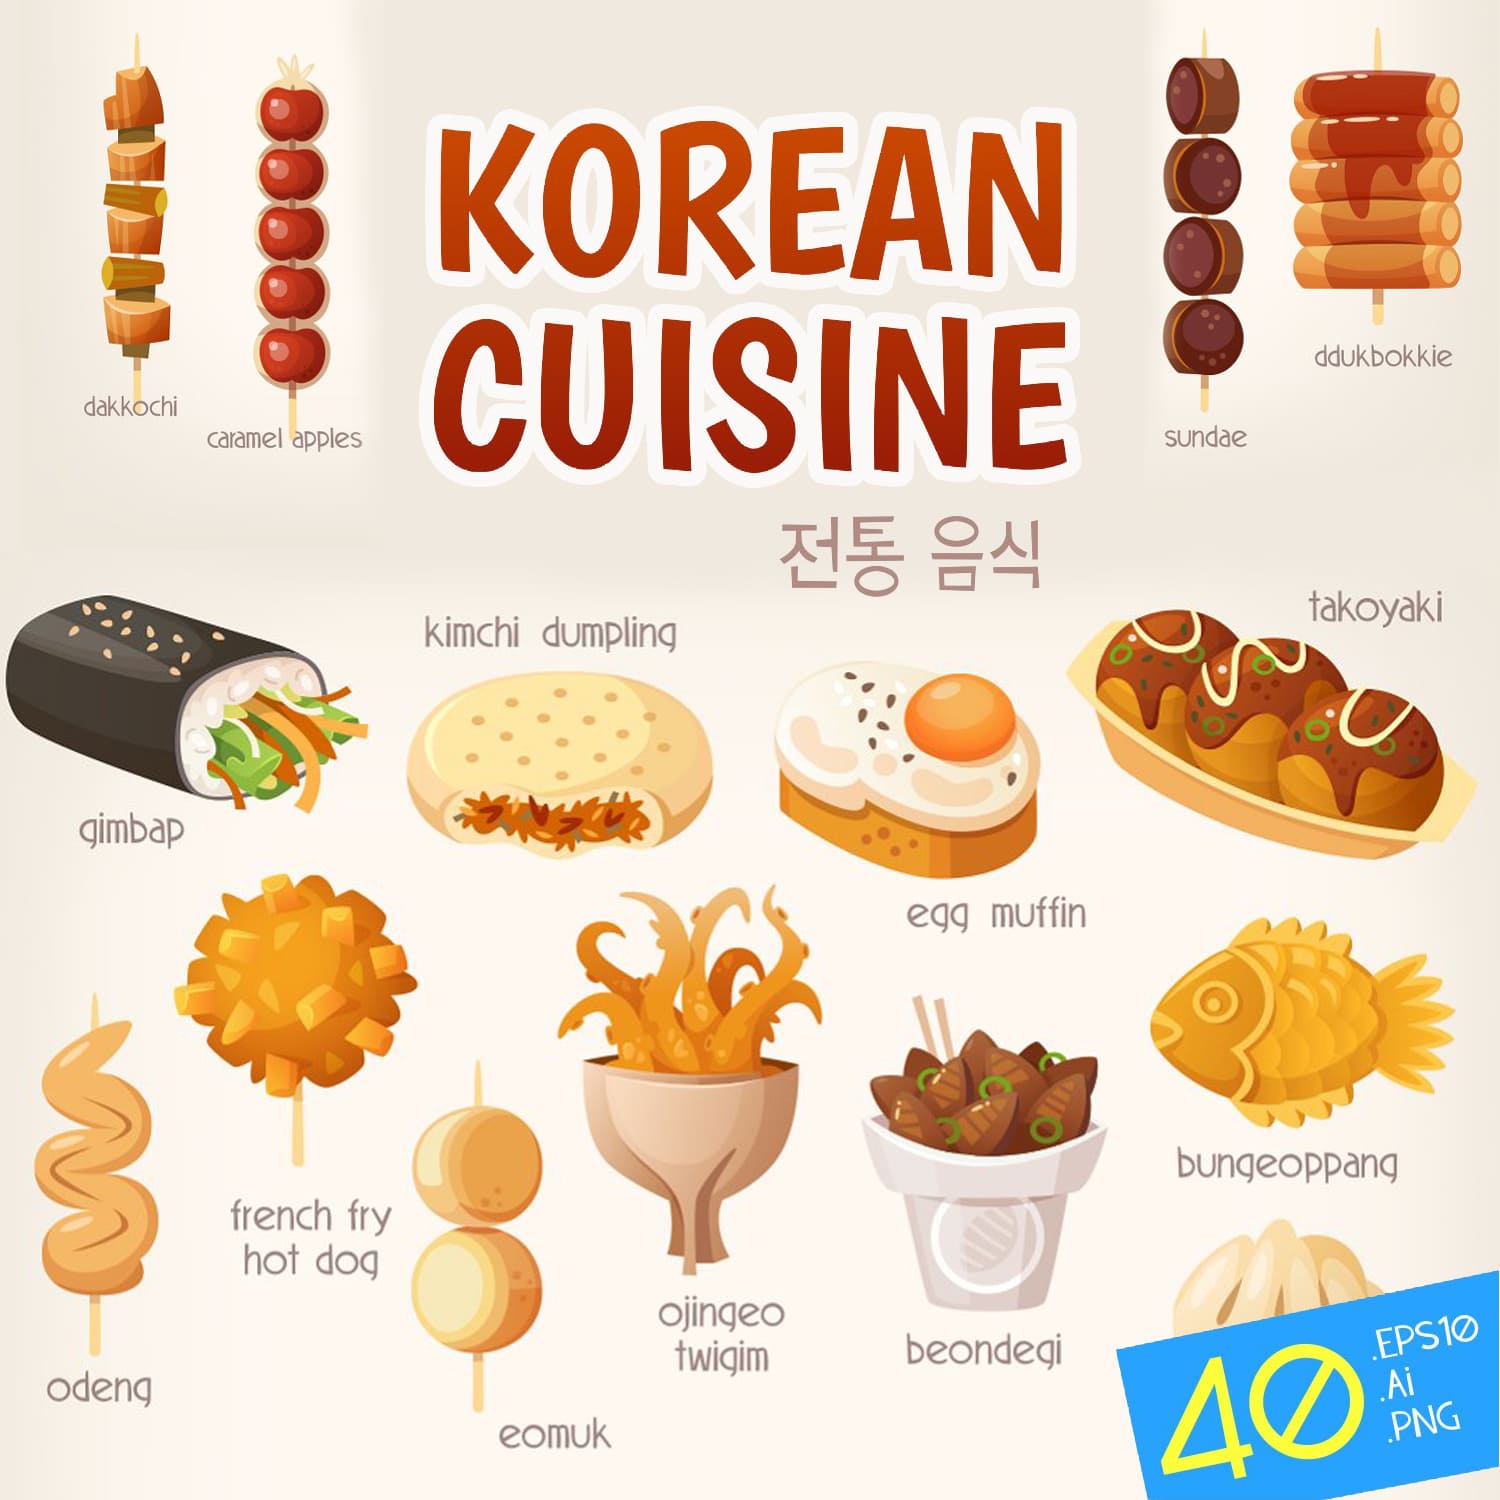 Korean cuisine dishes.